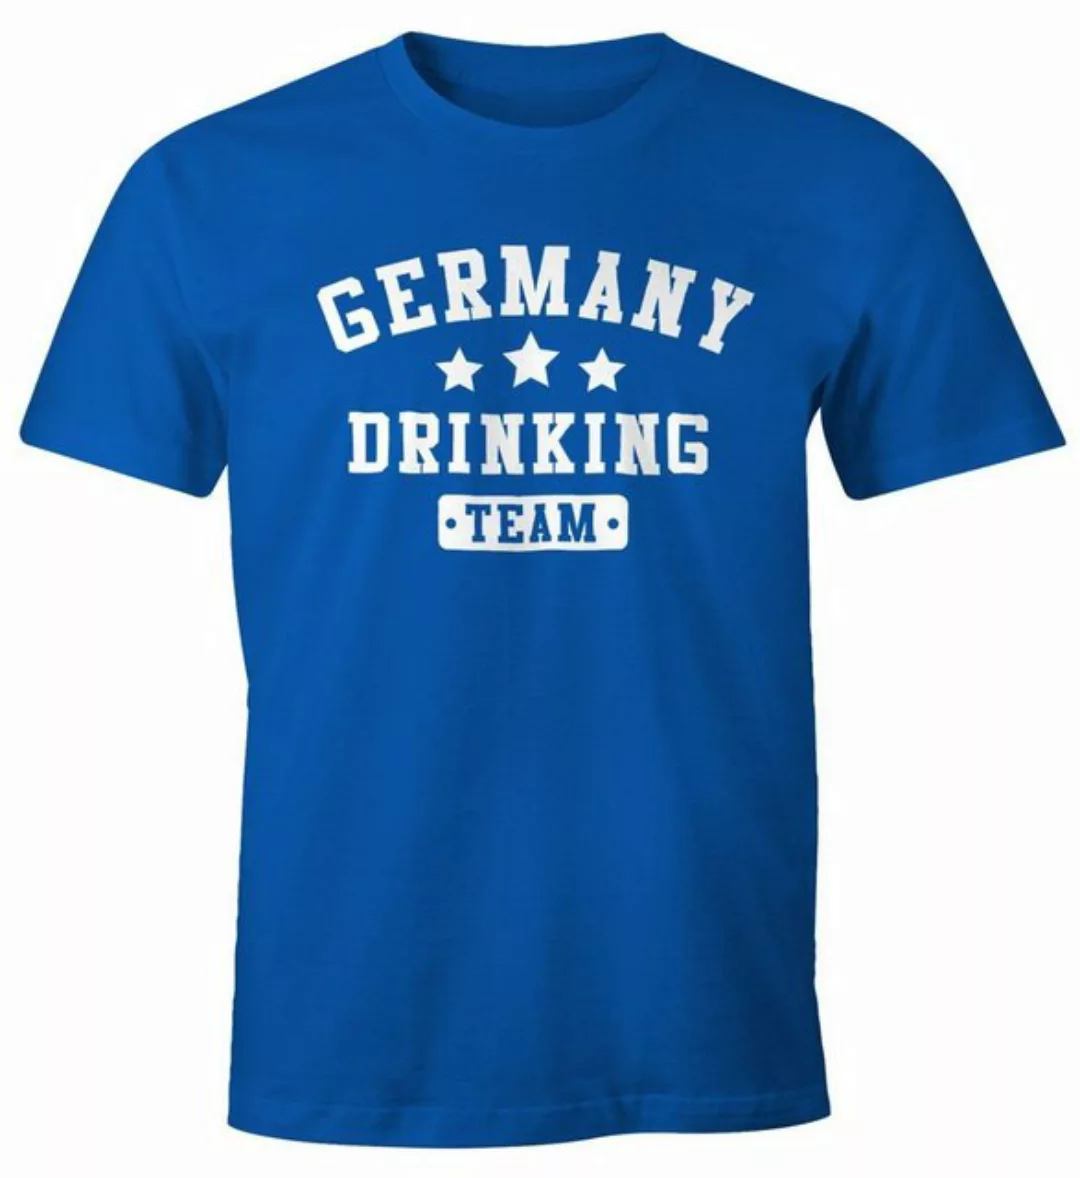 MoonWorks Print-Shirt Herren T-Shirt Germany Drinking Team Bier Fun-Shirt M günstig online kaufen